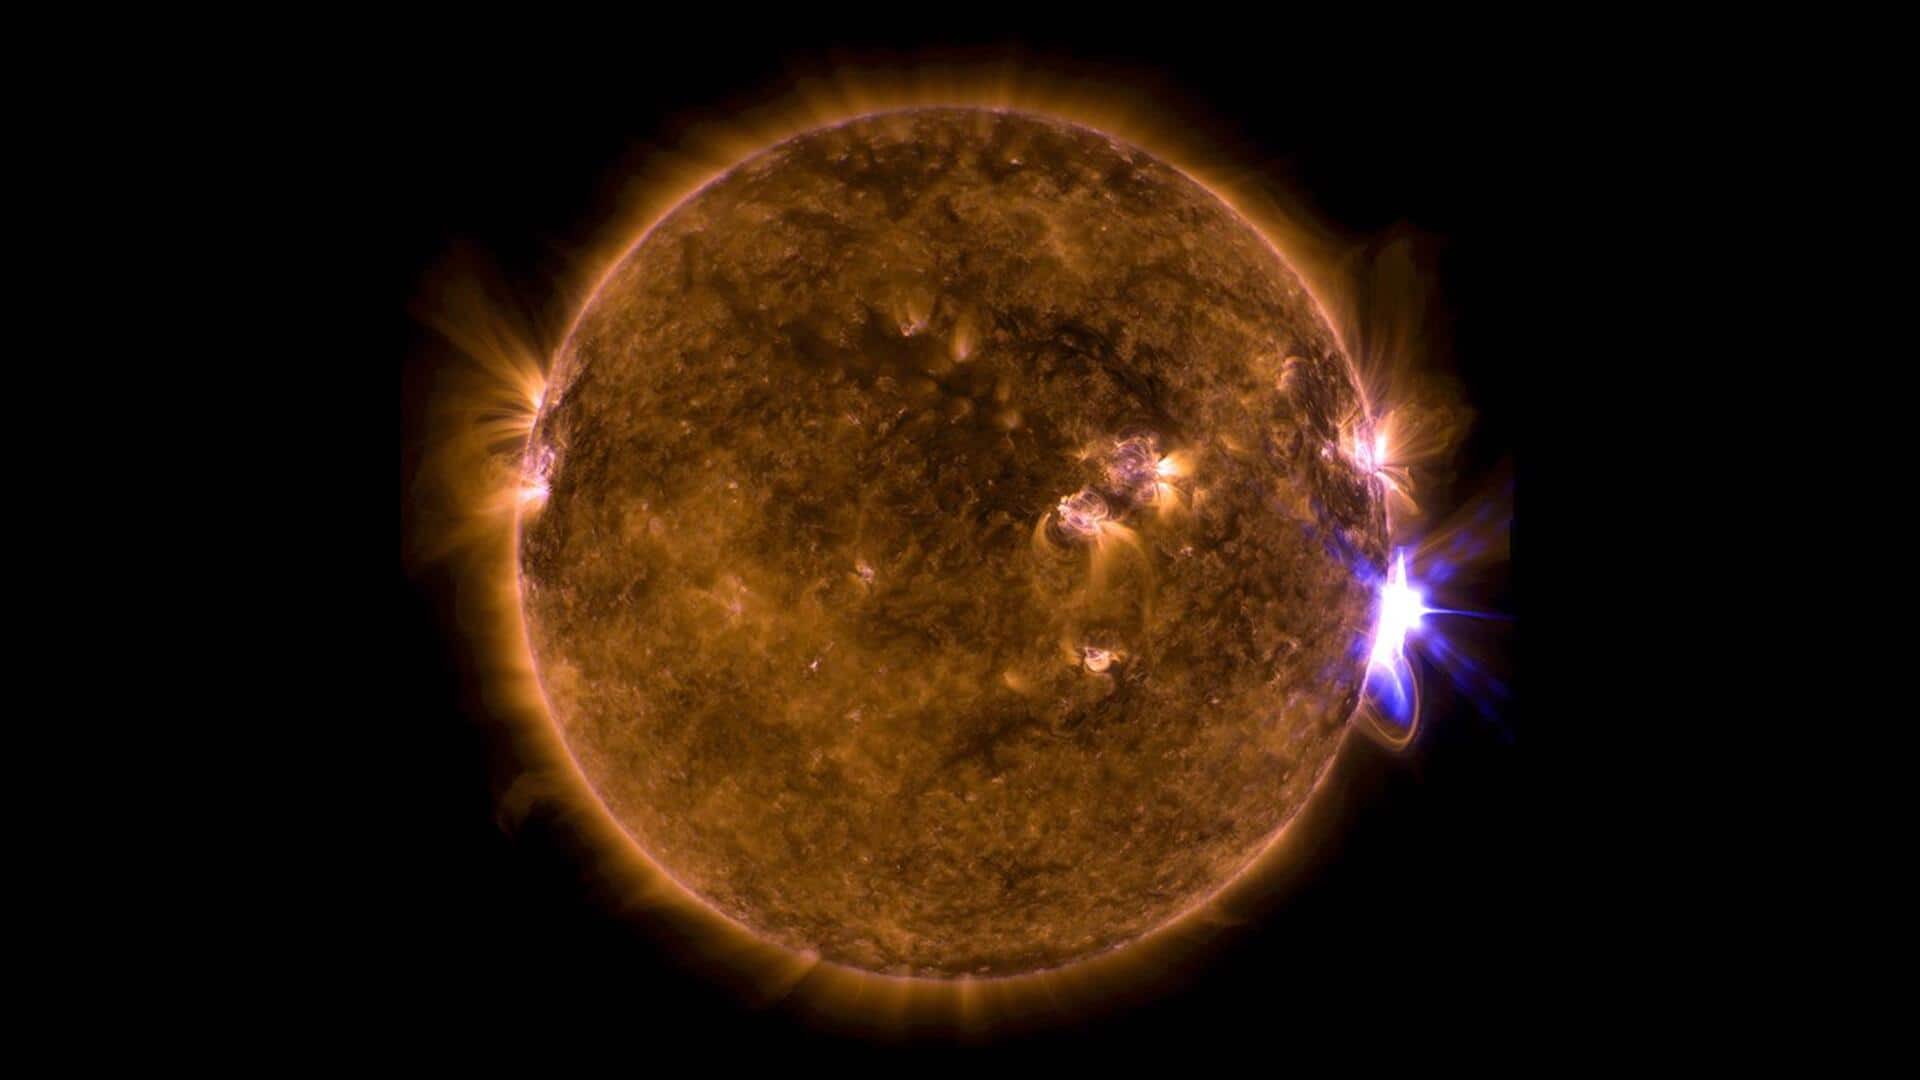 नासा ने सूर्य पर नए सनस्पॉट का लगाया पता, पृथ्वी पर आ सकता है सोलर फ्लेयर